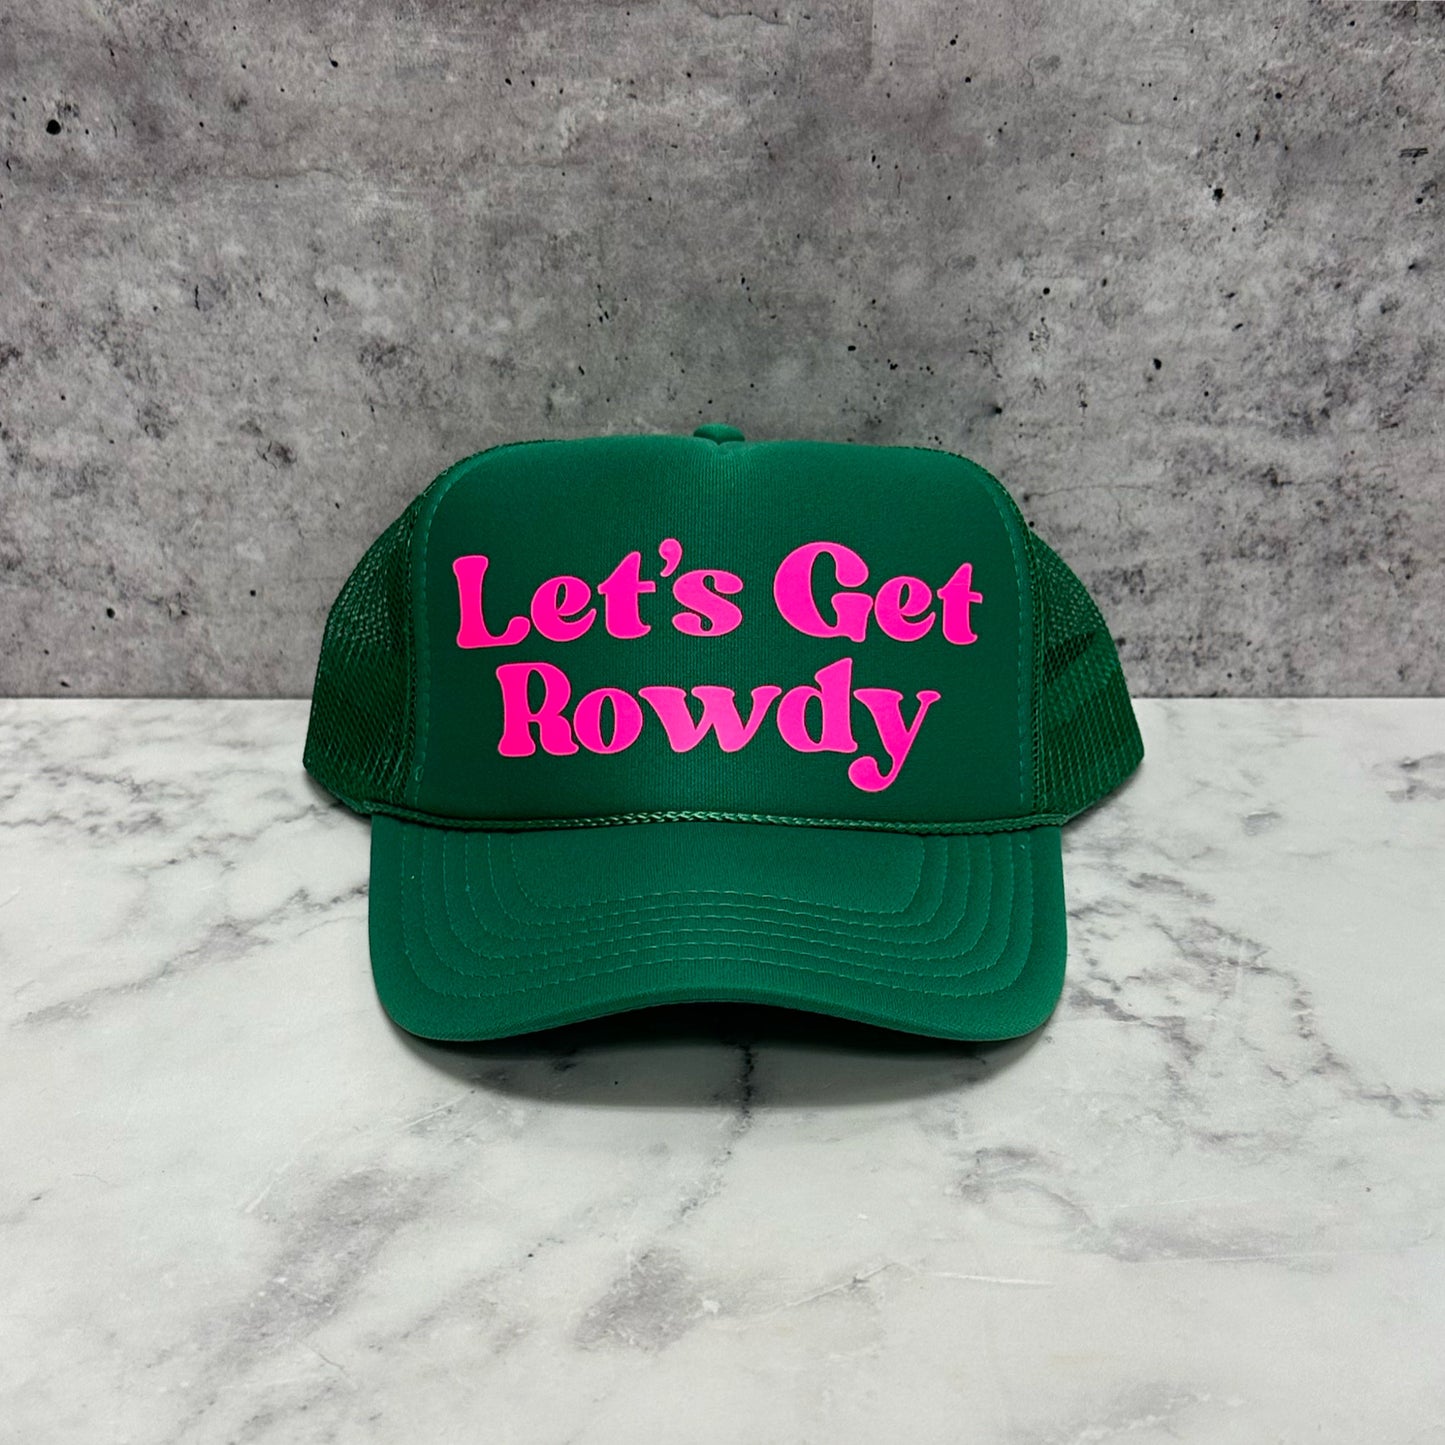 Let's Get Rowdy Trucker Hat